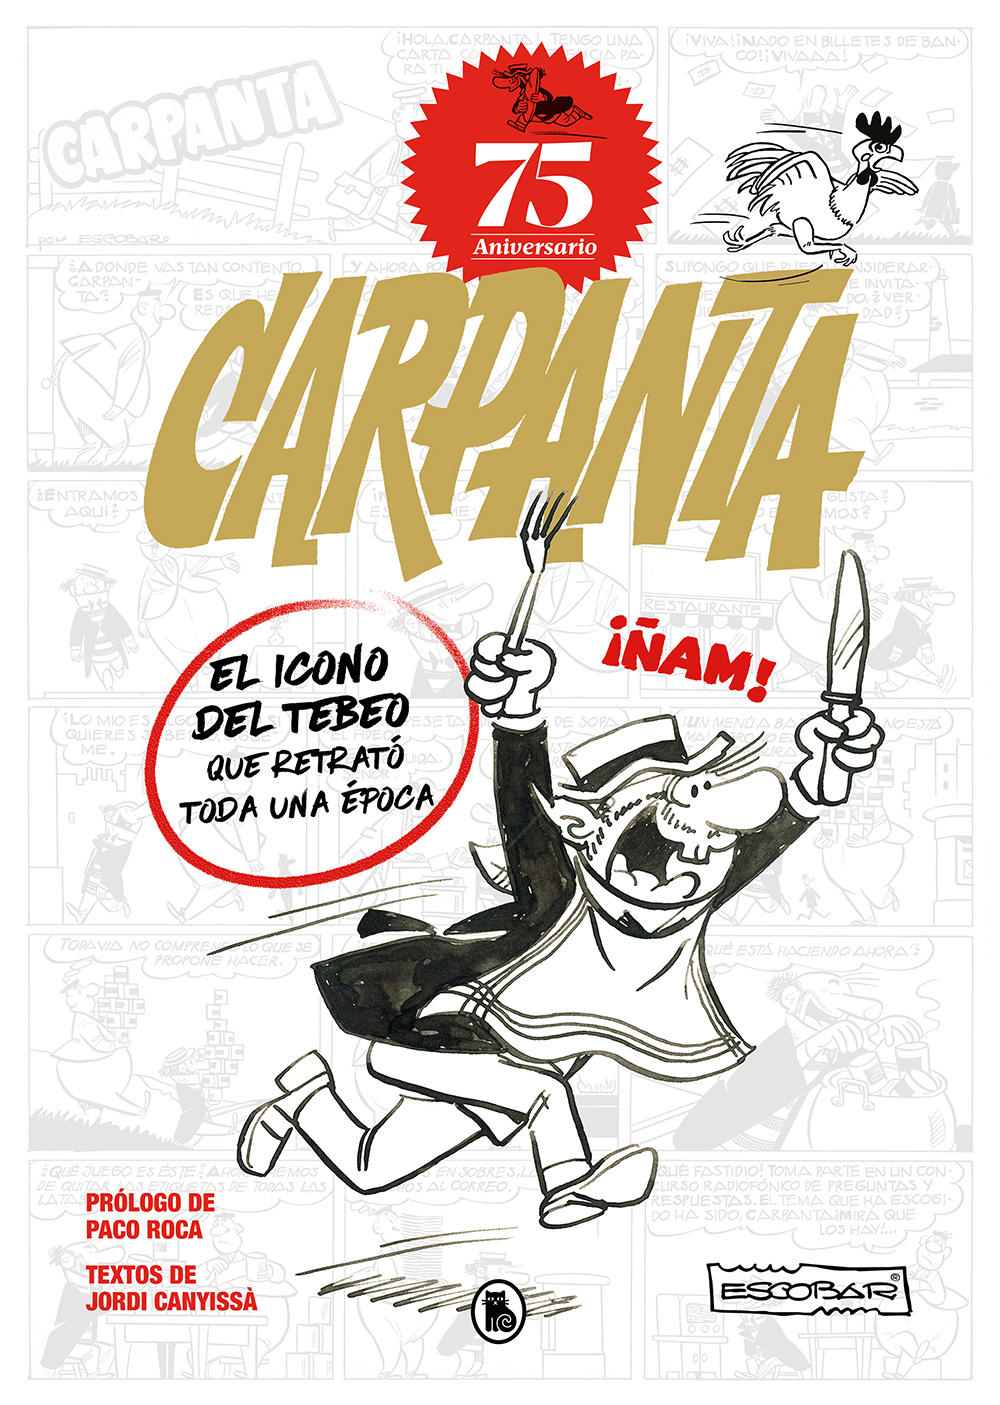 75 aniversario de Carpanta